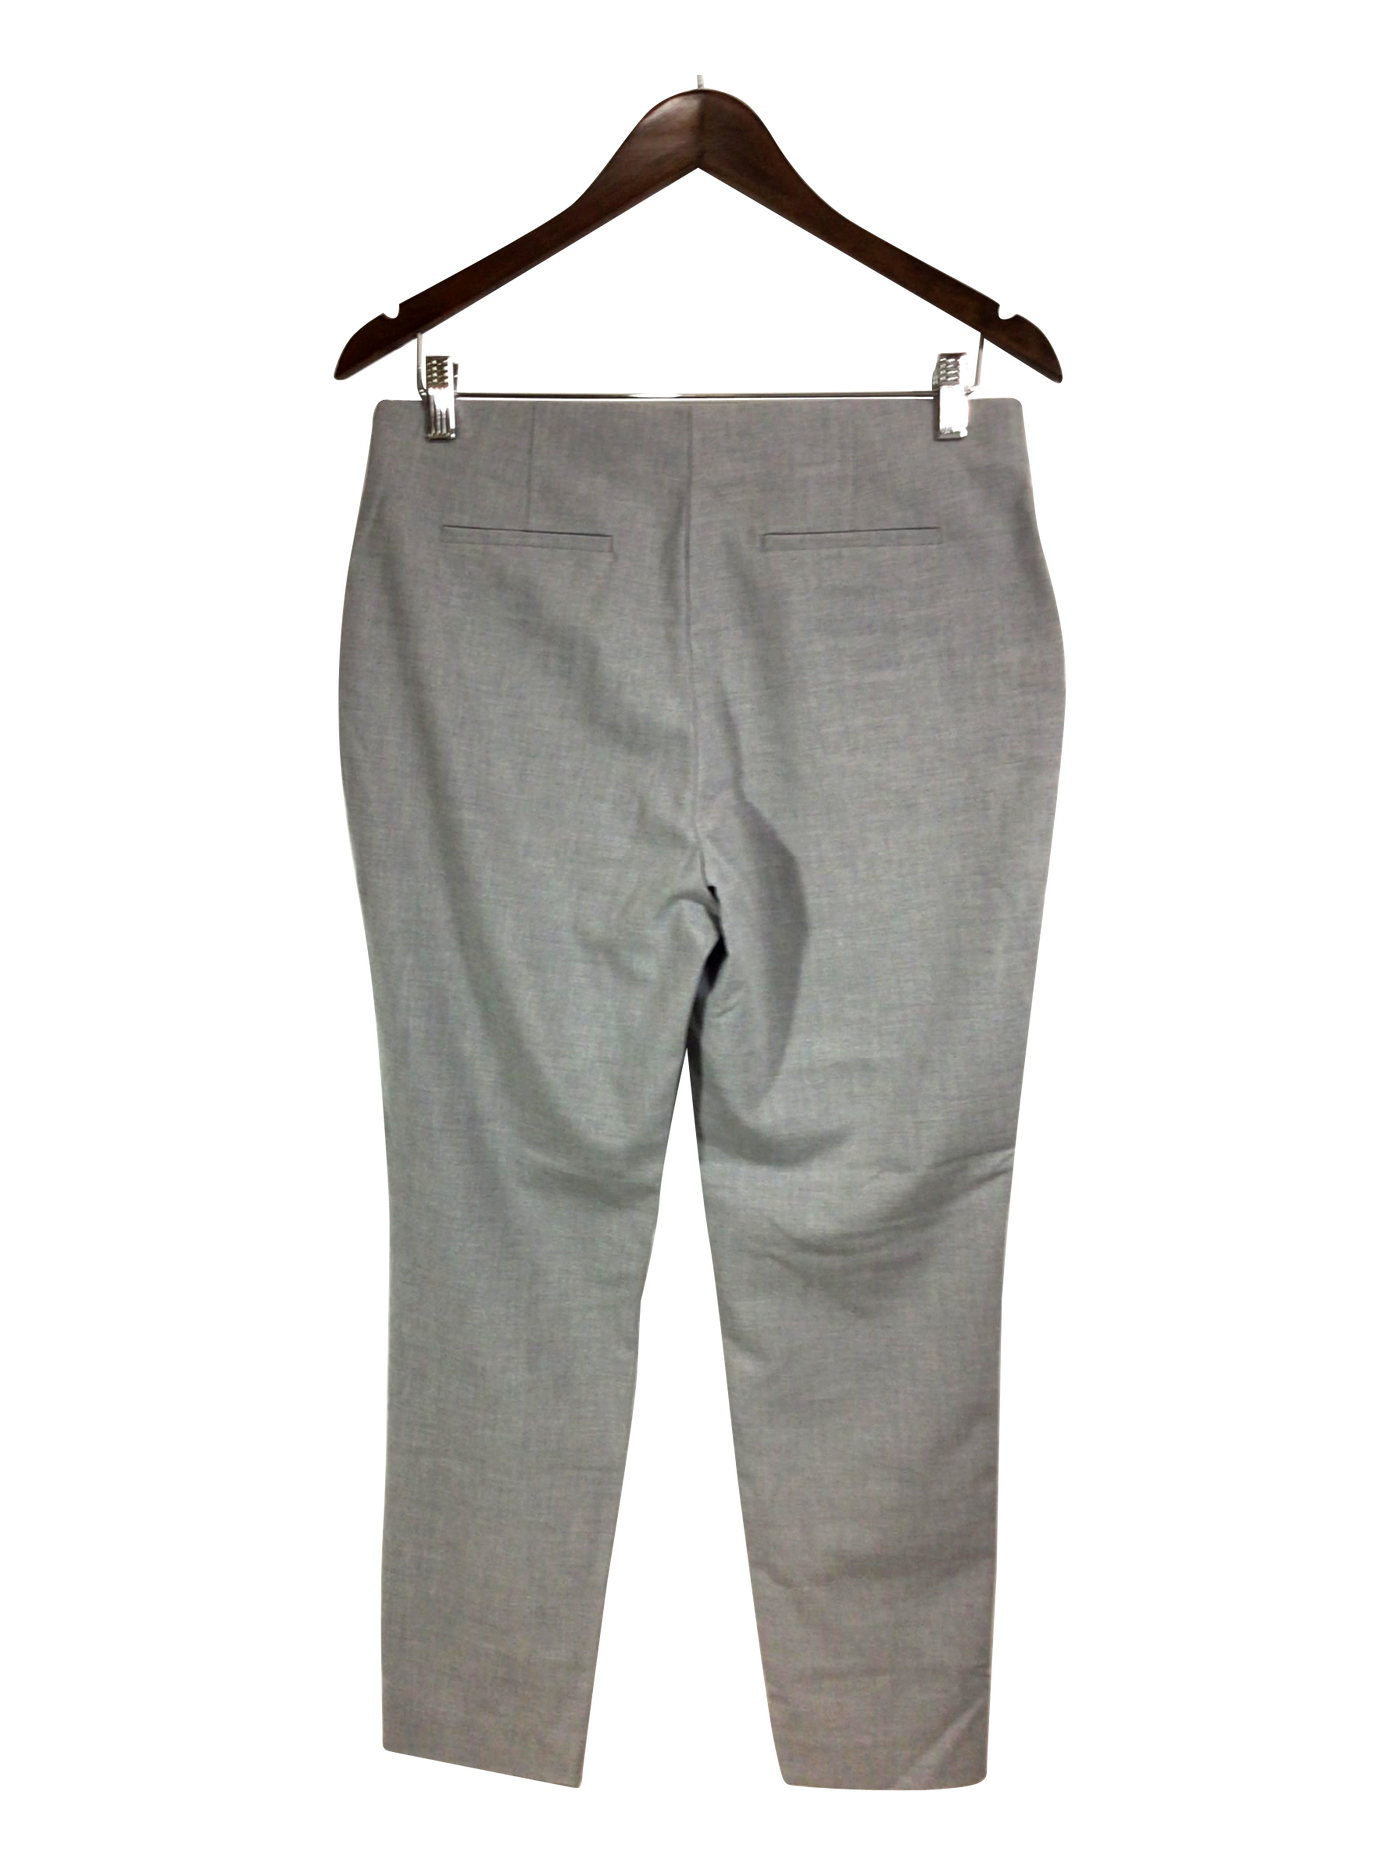 MELANIE LYNE Pant Regular fit in Gray - Size 6 | 24.74 $ KOOP